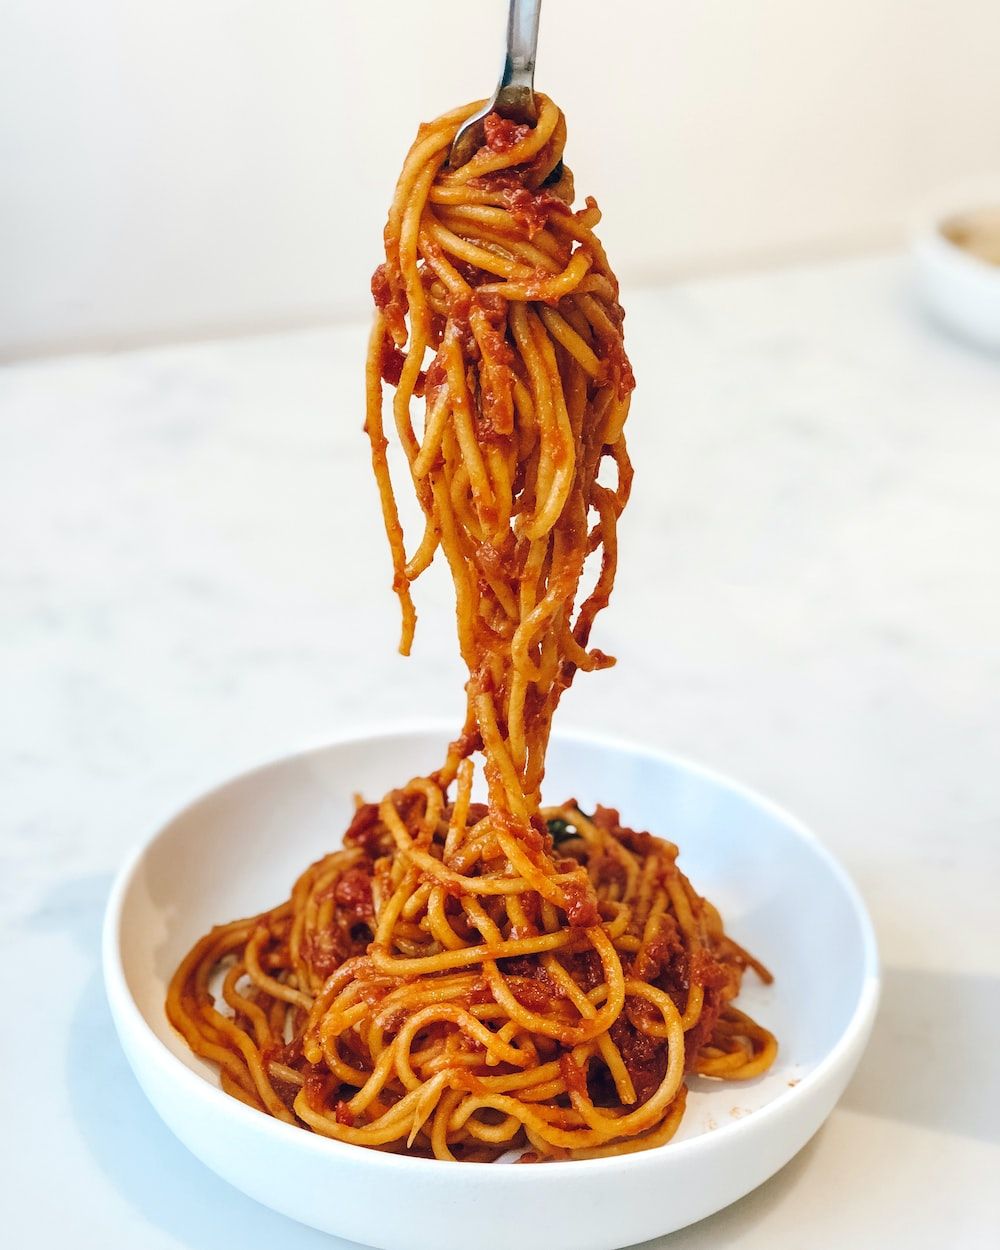 Spaghetti Picture. Download Free Image